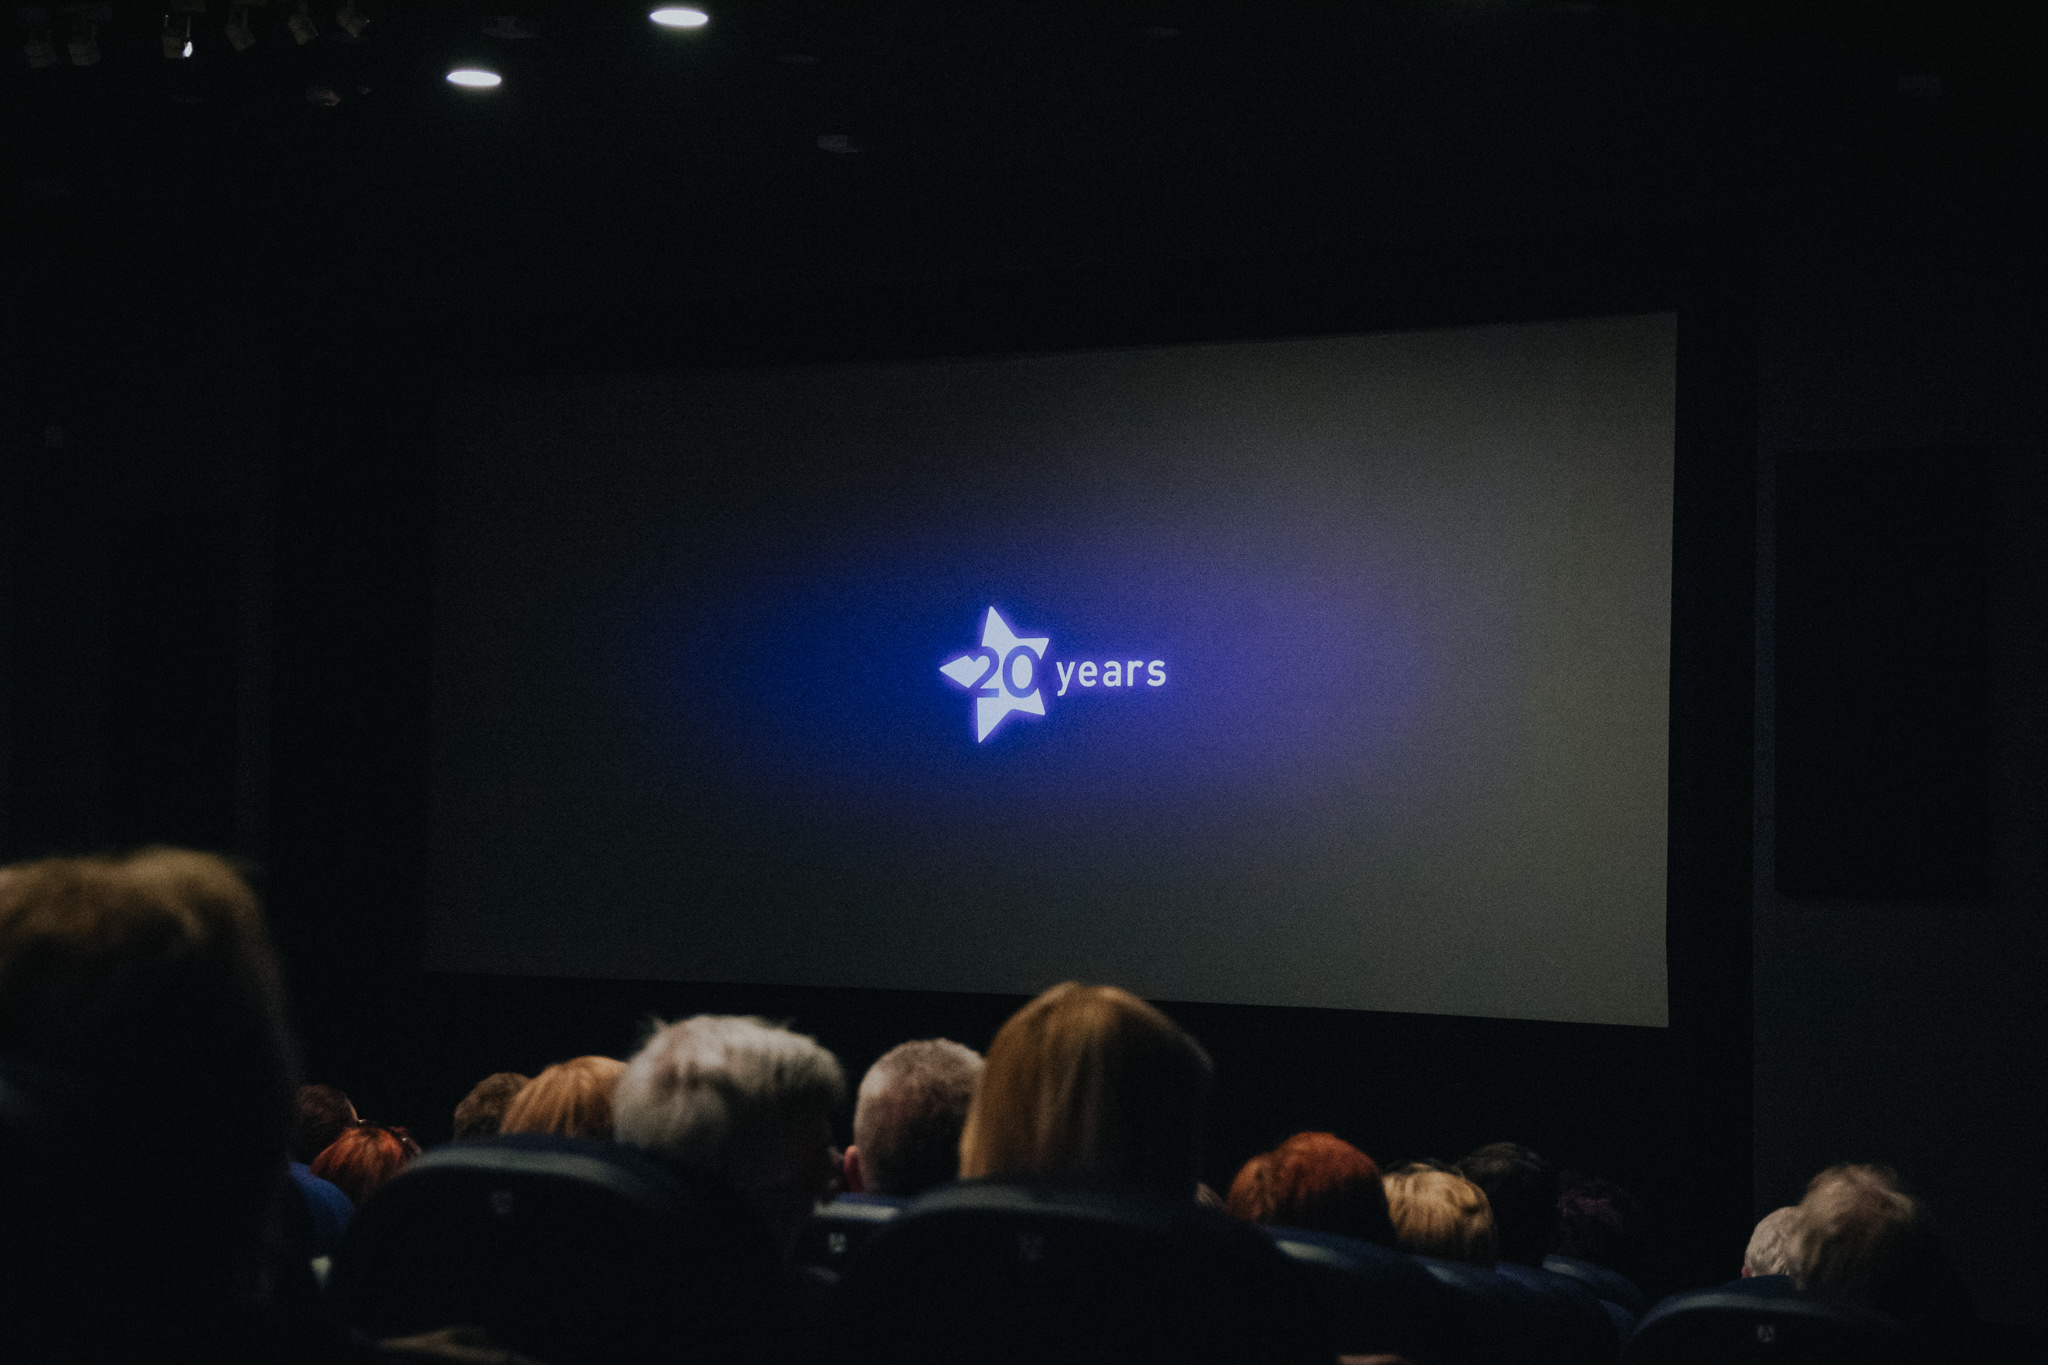 Kino Studyjne OKF Iluzja w Częstochowie | Oskarowe Otwarcie